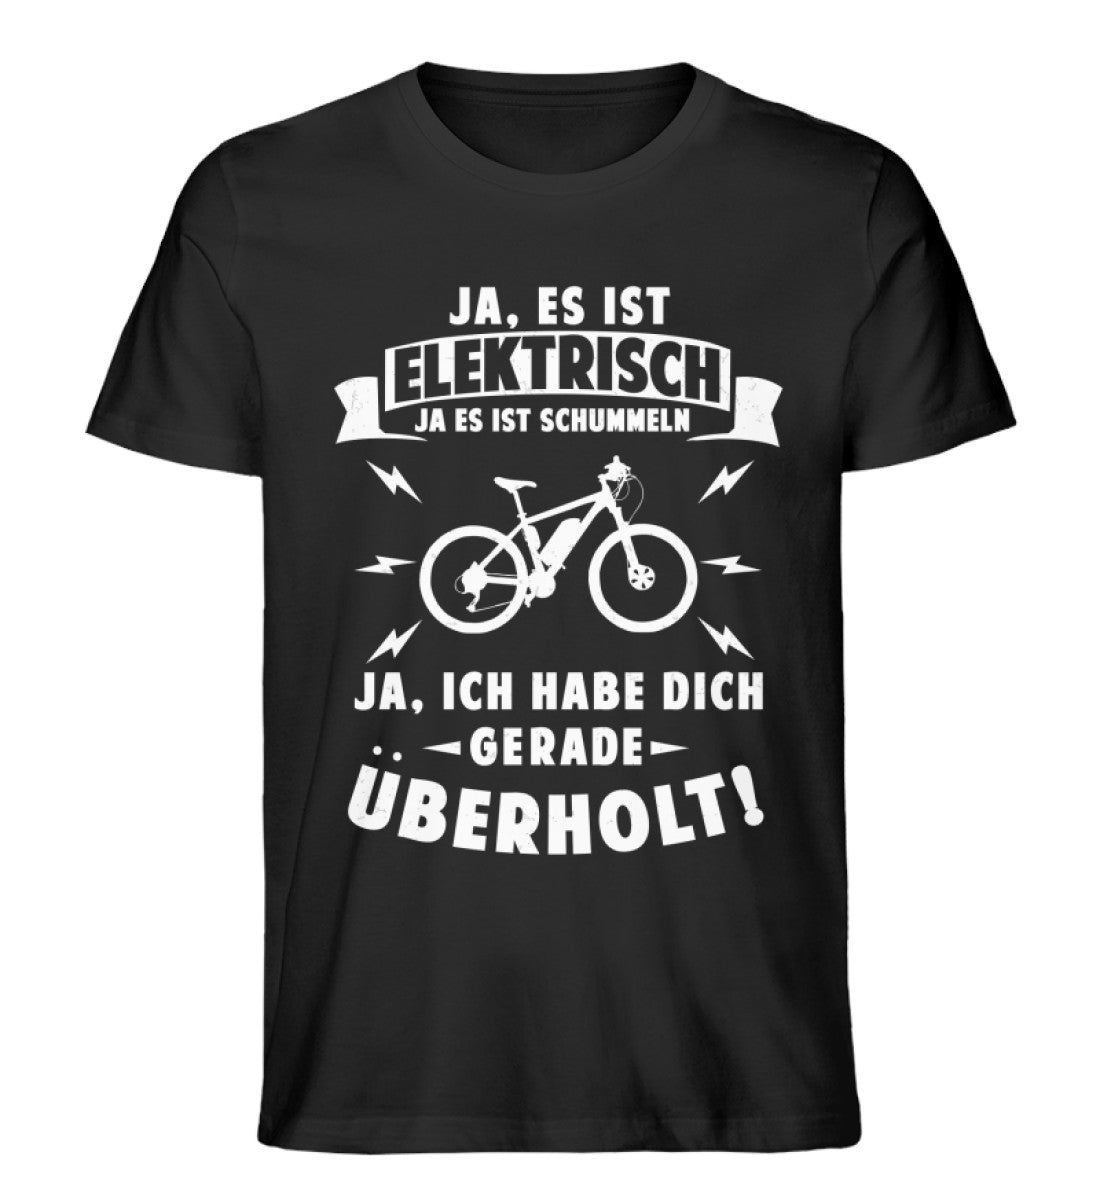 Ist elektrisch - Habe dich überholt - Herren Organic T-Shirt e-bike Schwarz